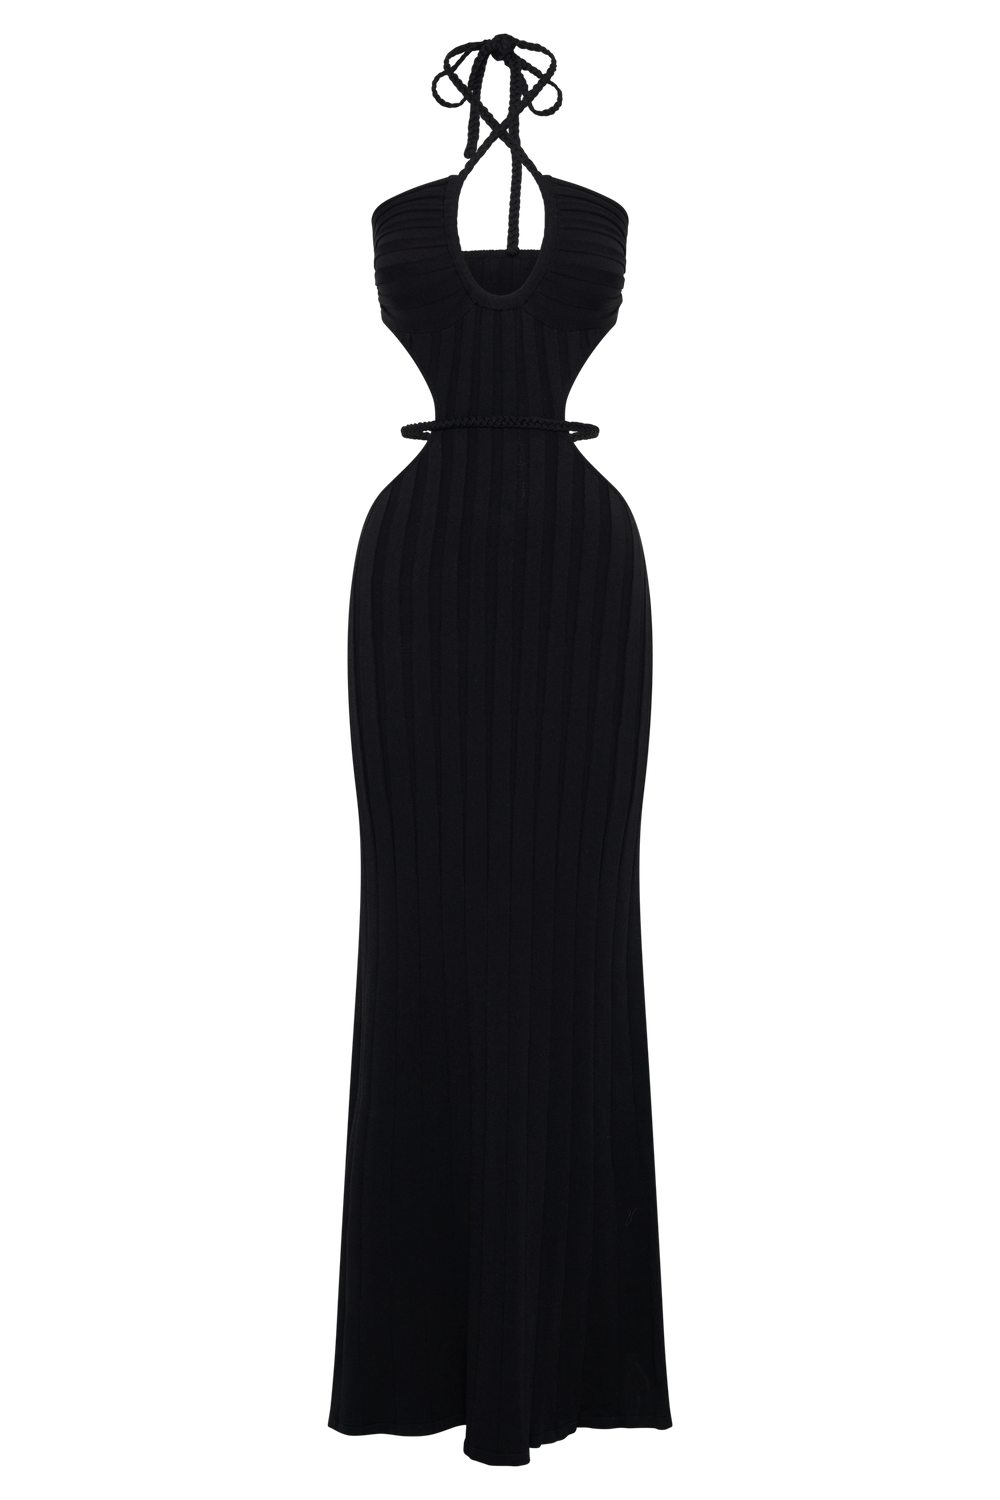 Minerva Cut Out Knit Maxi Dress - Black